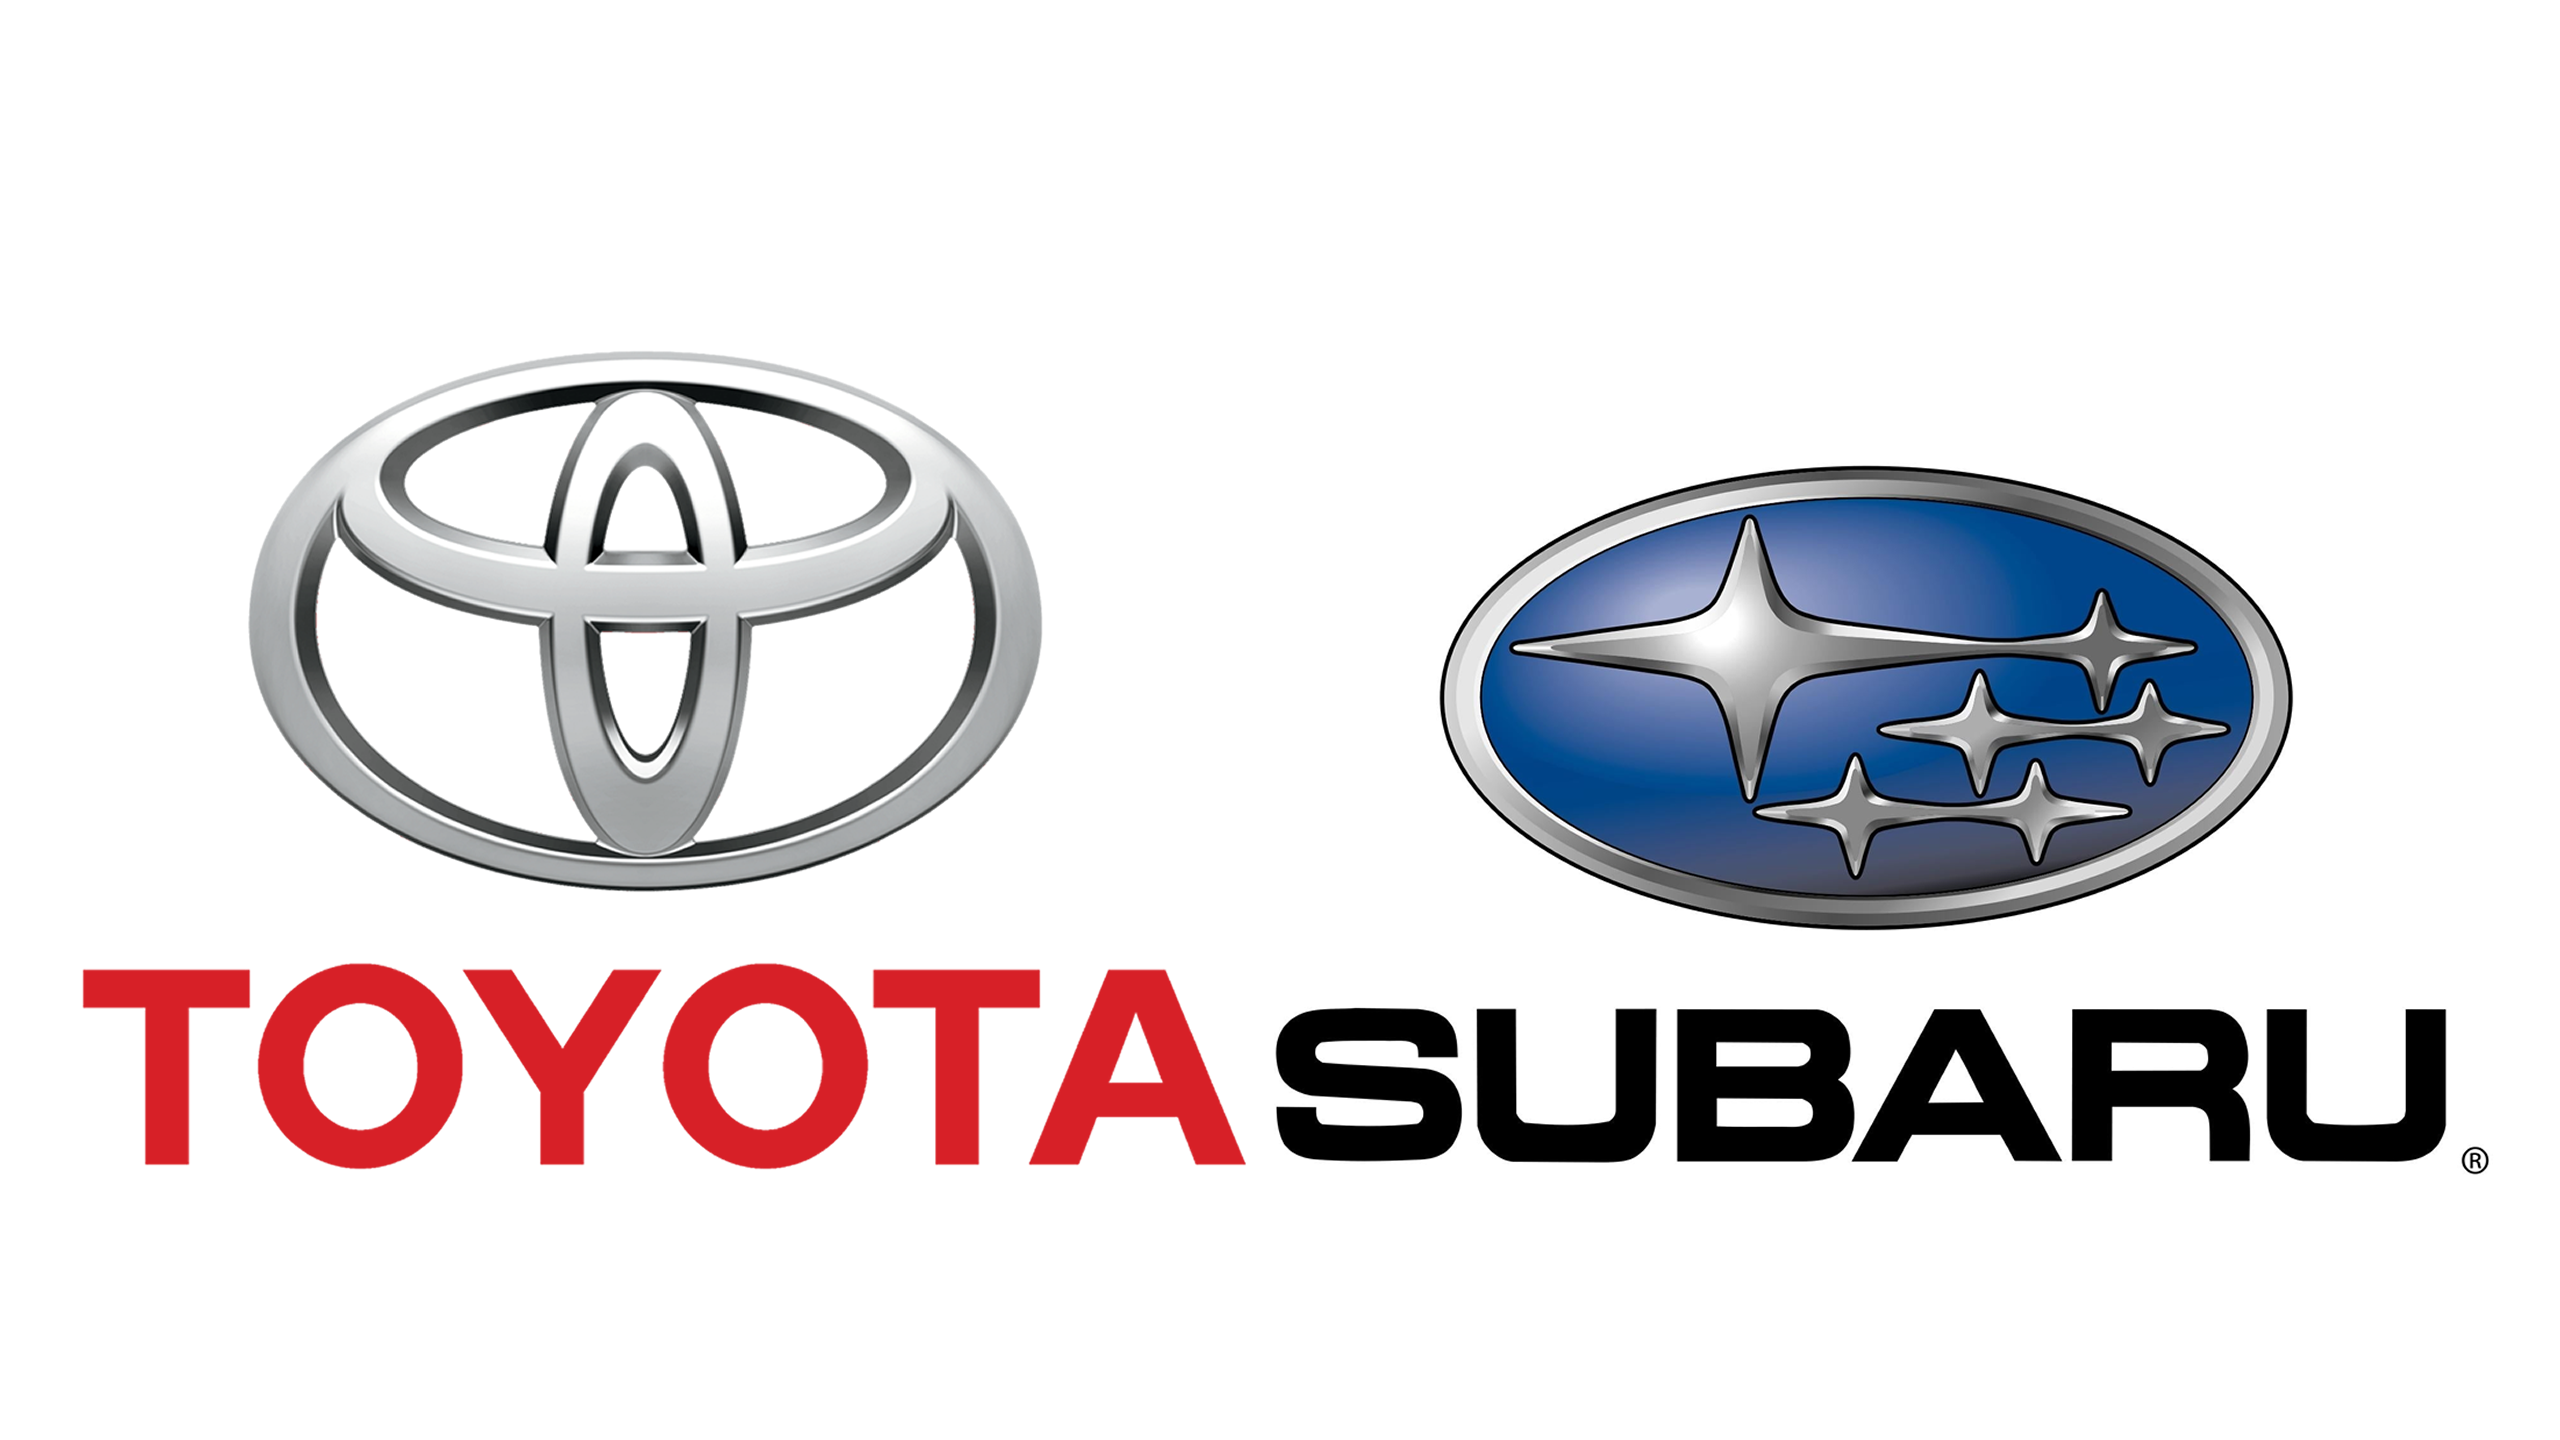 Parceria entre Toyota e Subaru criará um novo carro esporte para este ano